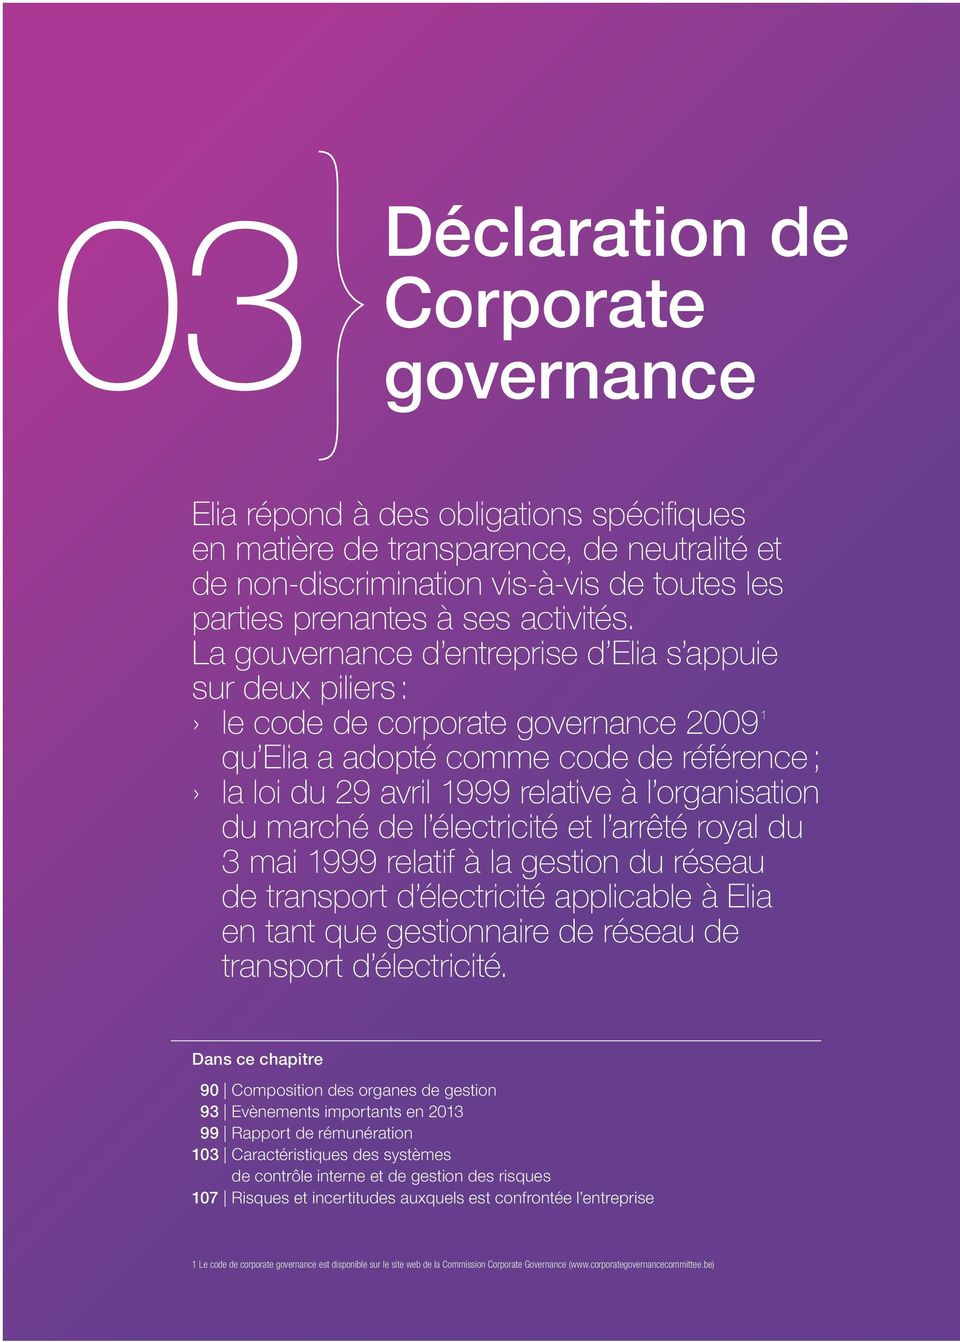 La gouvernance d entreprise d Elia s appuie sur deux piliers : le code de corporate governance 2009 1 qu Elia a adopté comme code de référence ; la loi du 29 avril 1999 relative à l organisation du